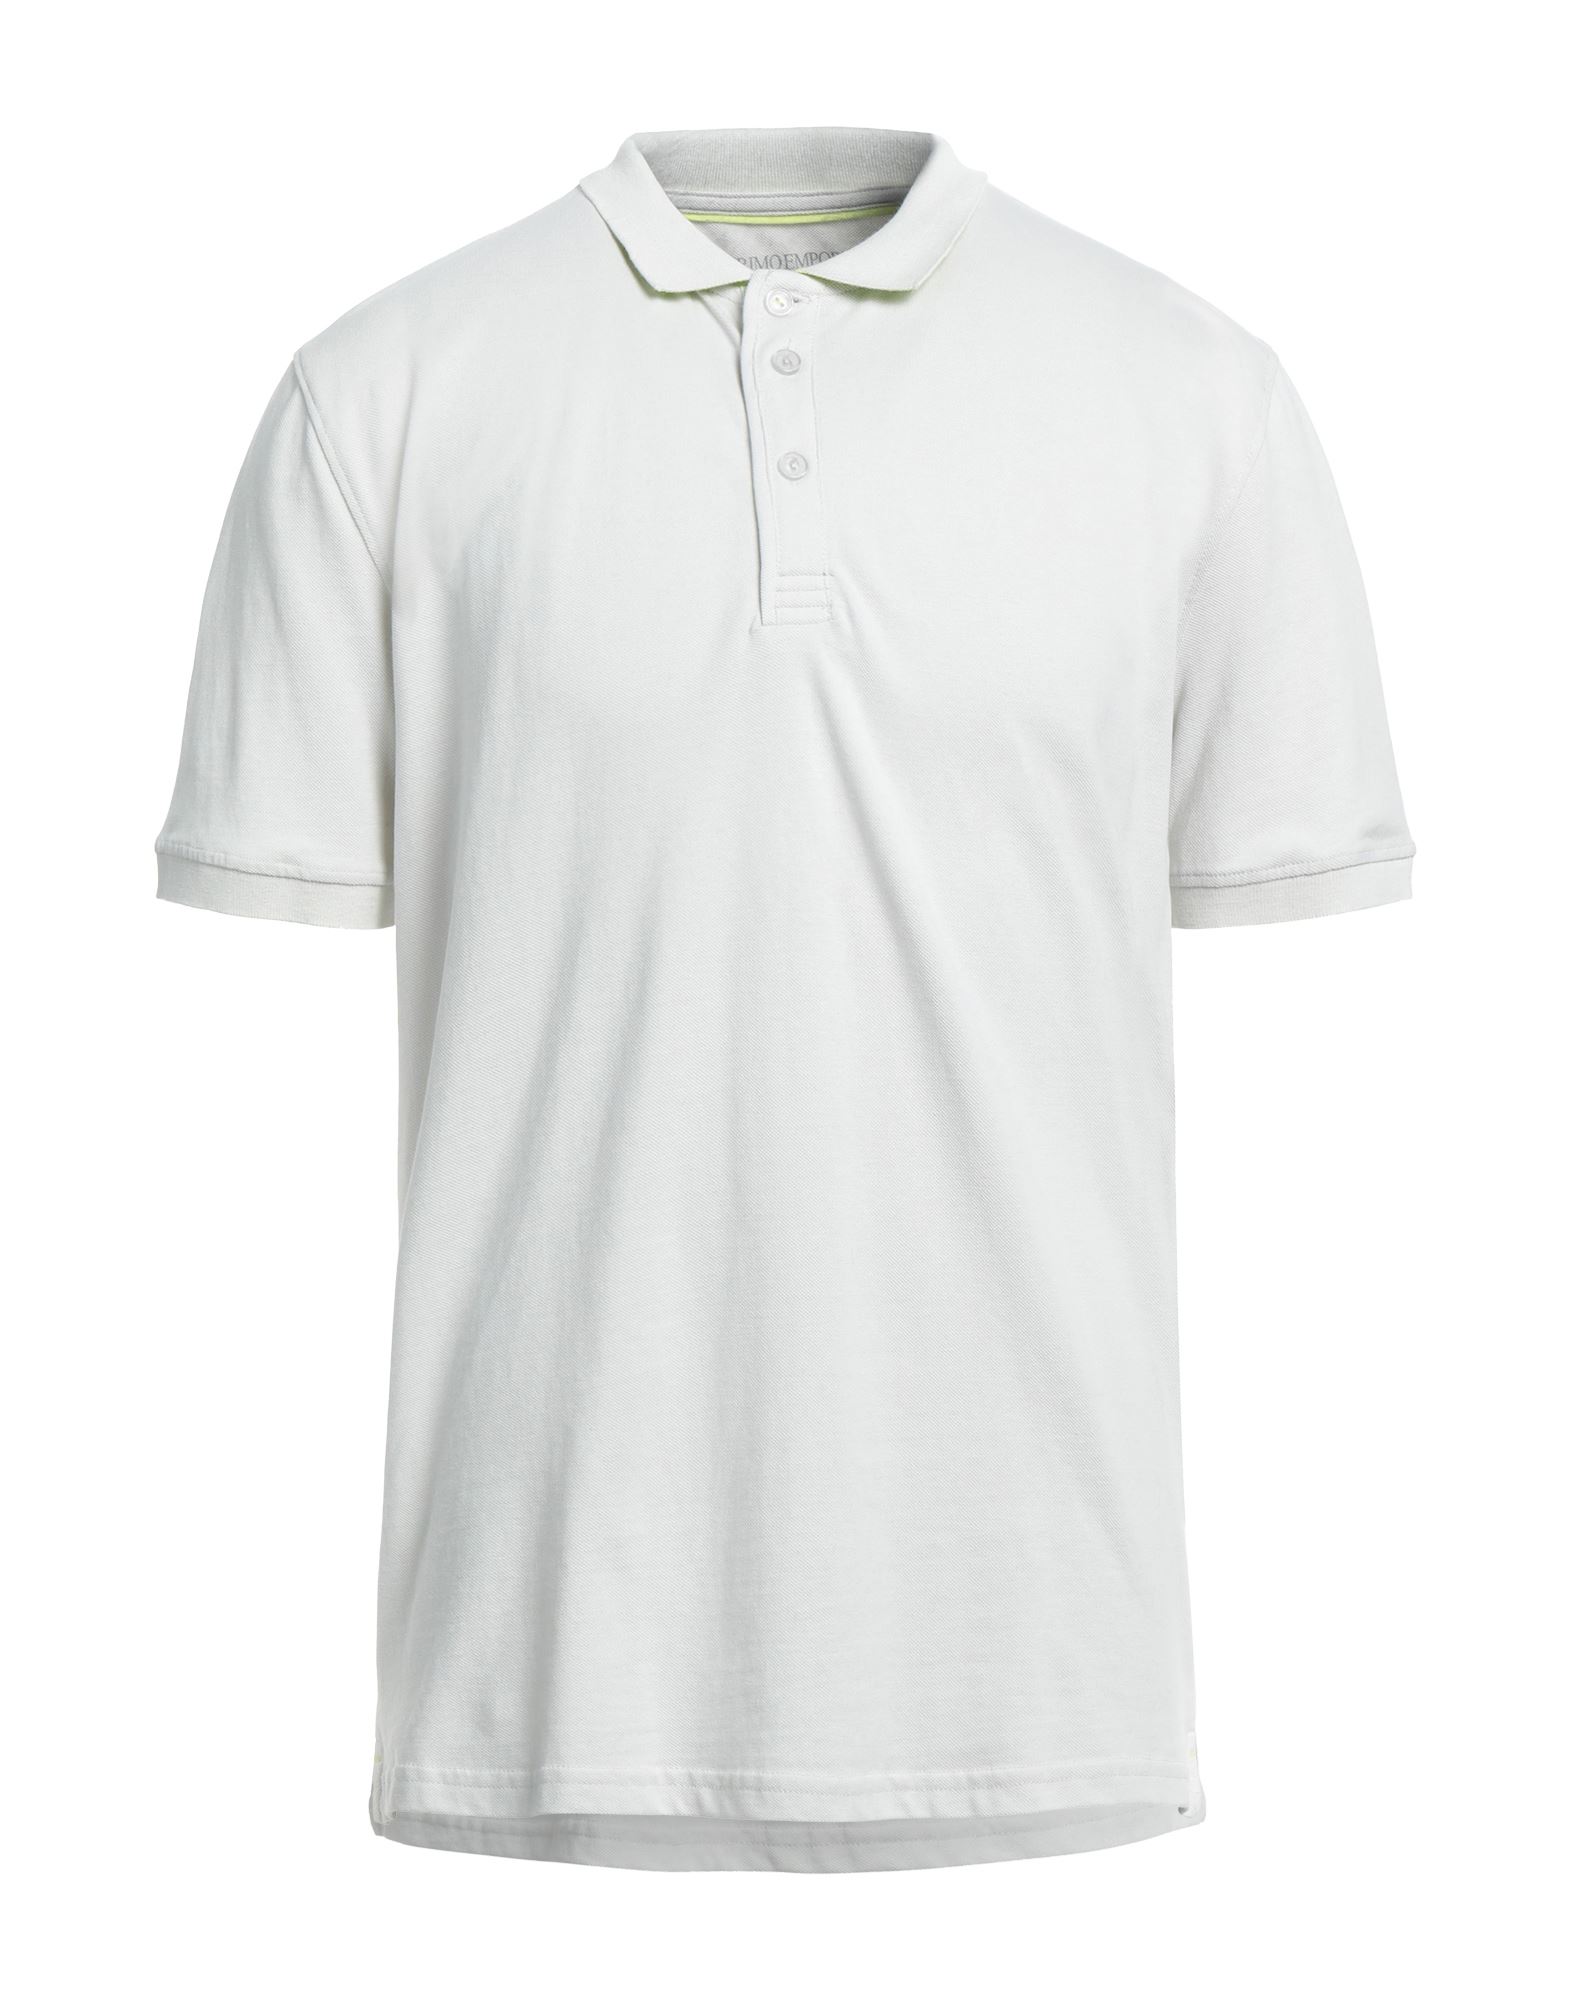 Primo Emporio Man Polo Shirt Light Grey Size S Cotton